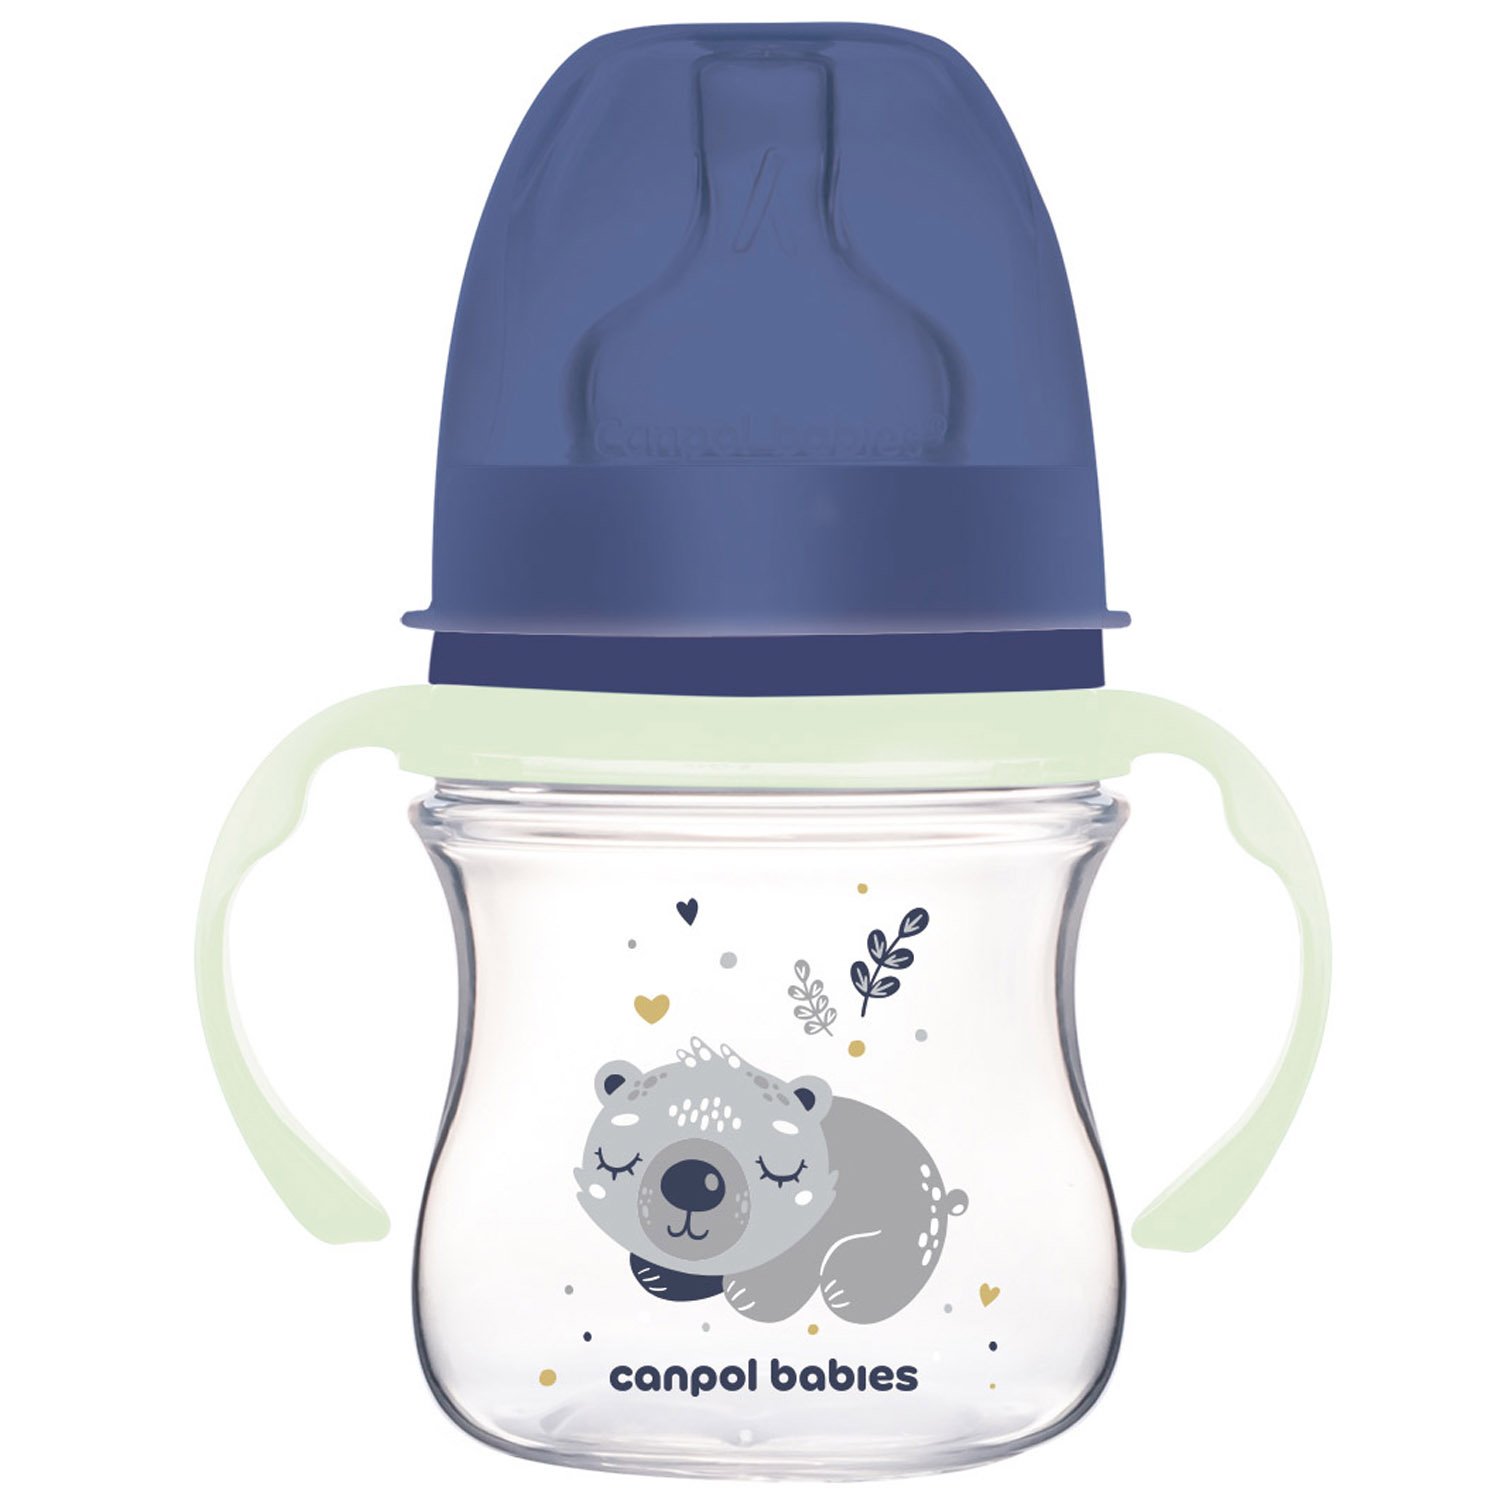 Бутылочка для кормления Canpol babies Easystart Sleepy Koala, антиколиковая, 120 мл, голубая (35/236_blu) - фото 1